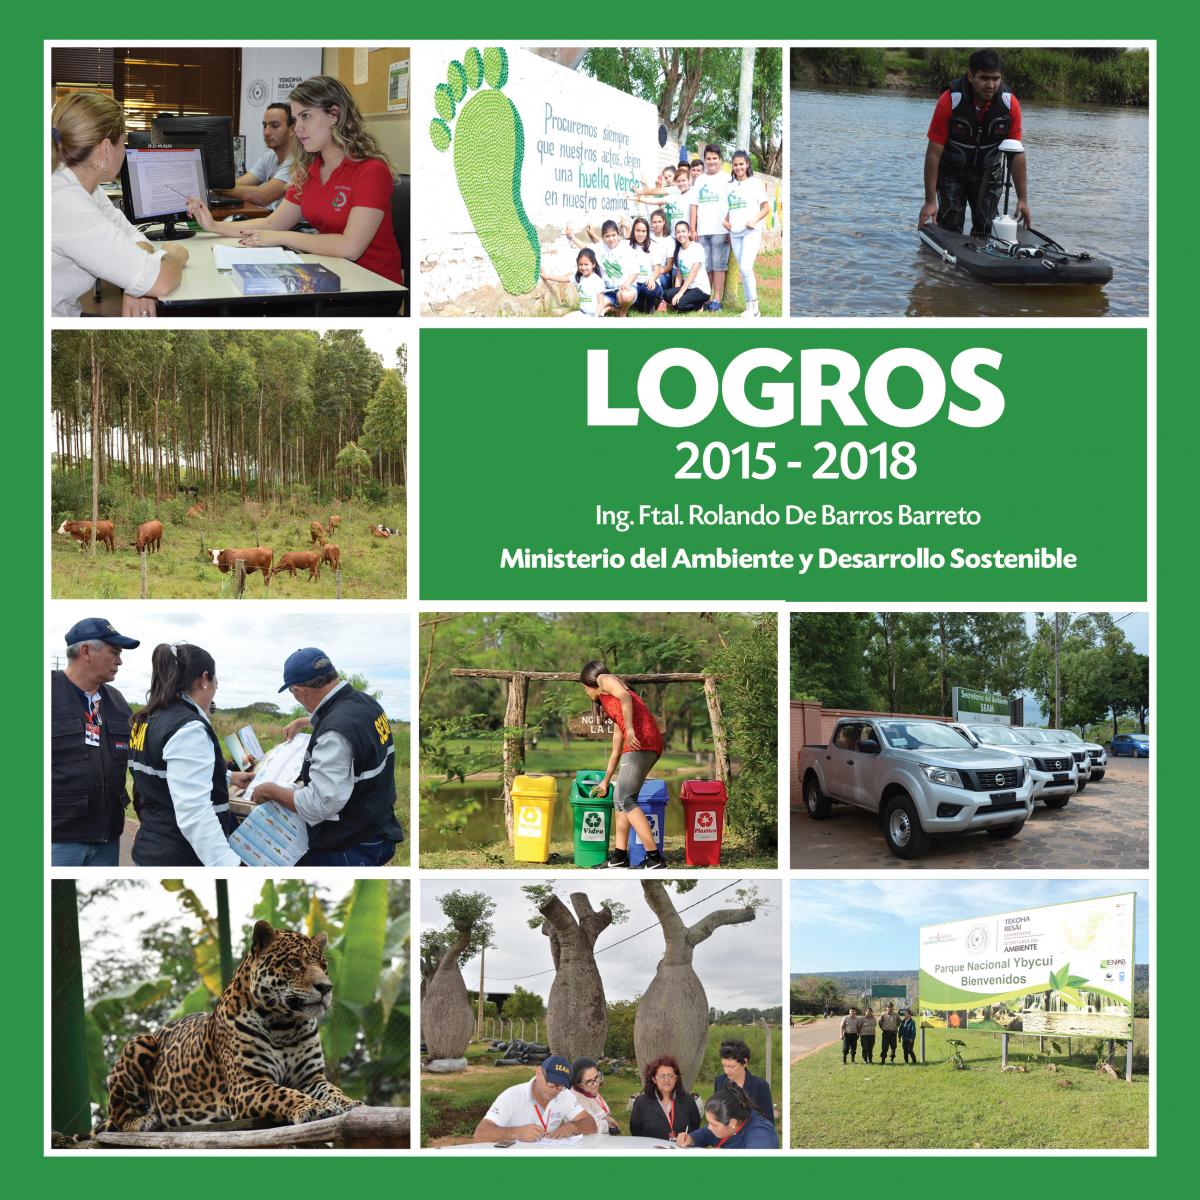 LOGROS 2015 – 2018 Ministerio del Ambiente y Desarrollo Sostenible Ing. Ftal. Rolando De Barros Barreto